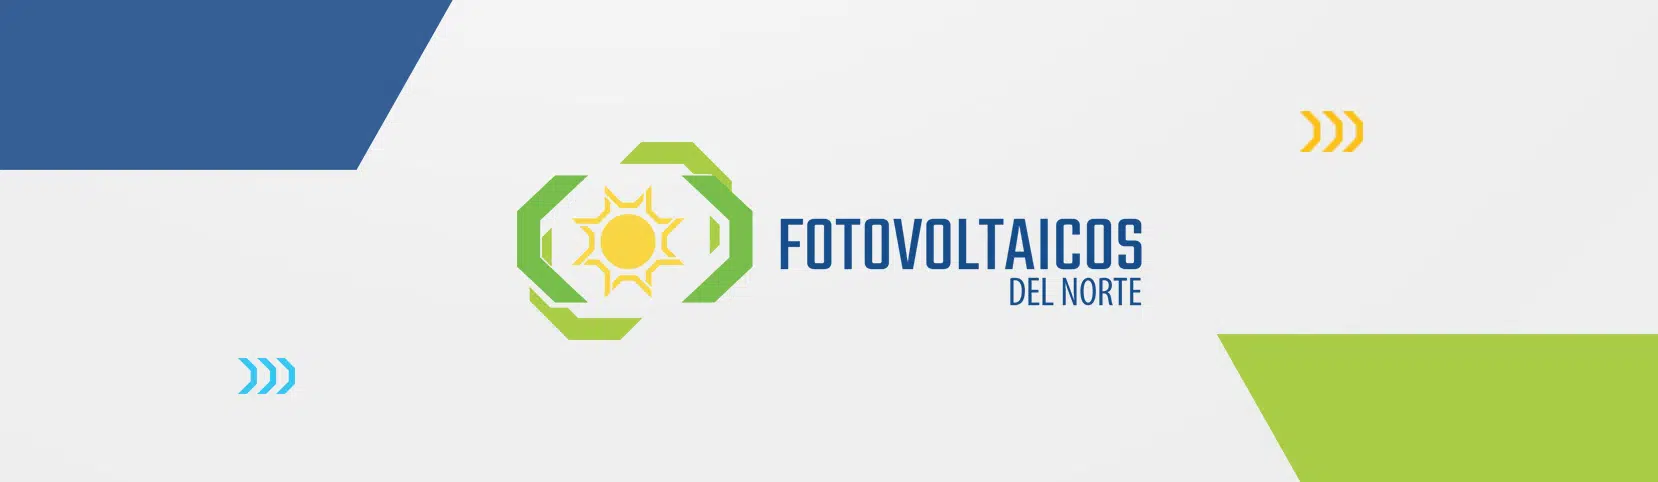 mambo agencia creativa fotovoltaicos logo